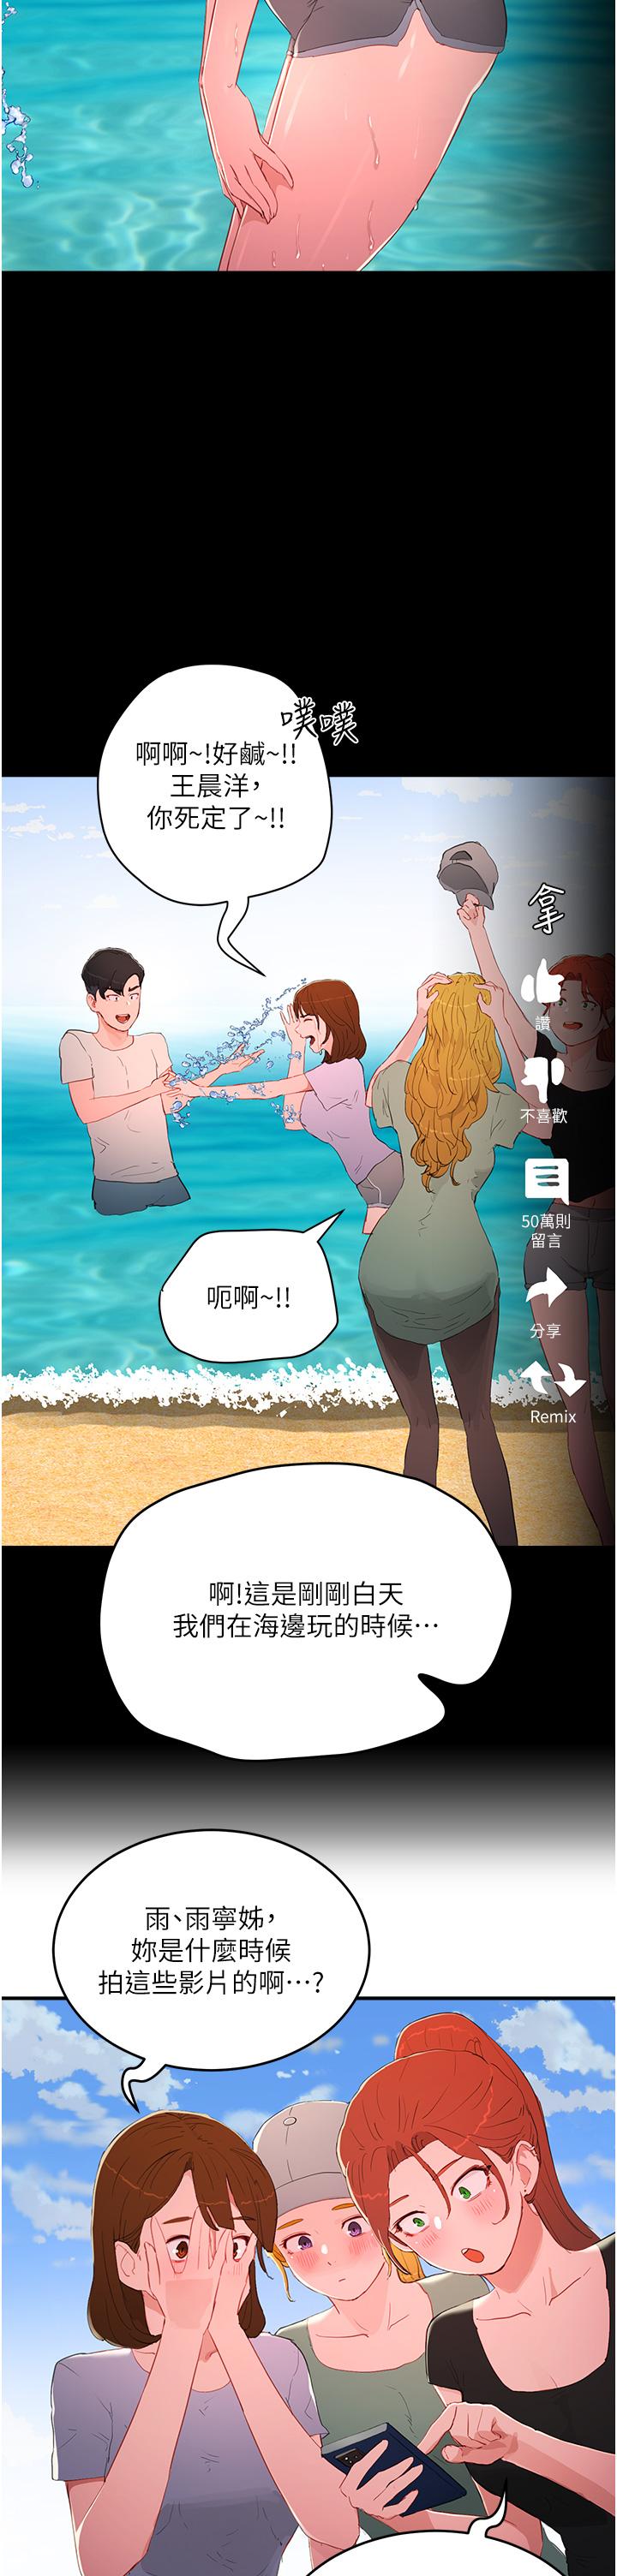 韩国污漫画 夏日深處 第64话 雨宁姊很会摇 13